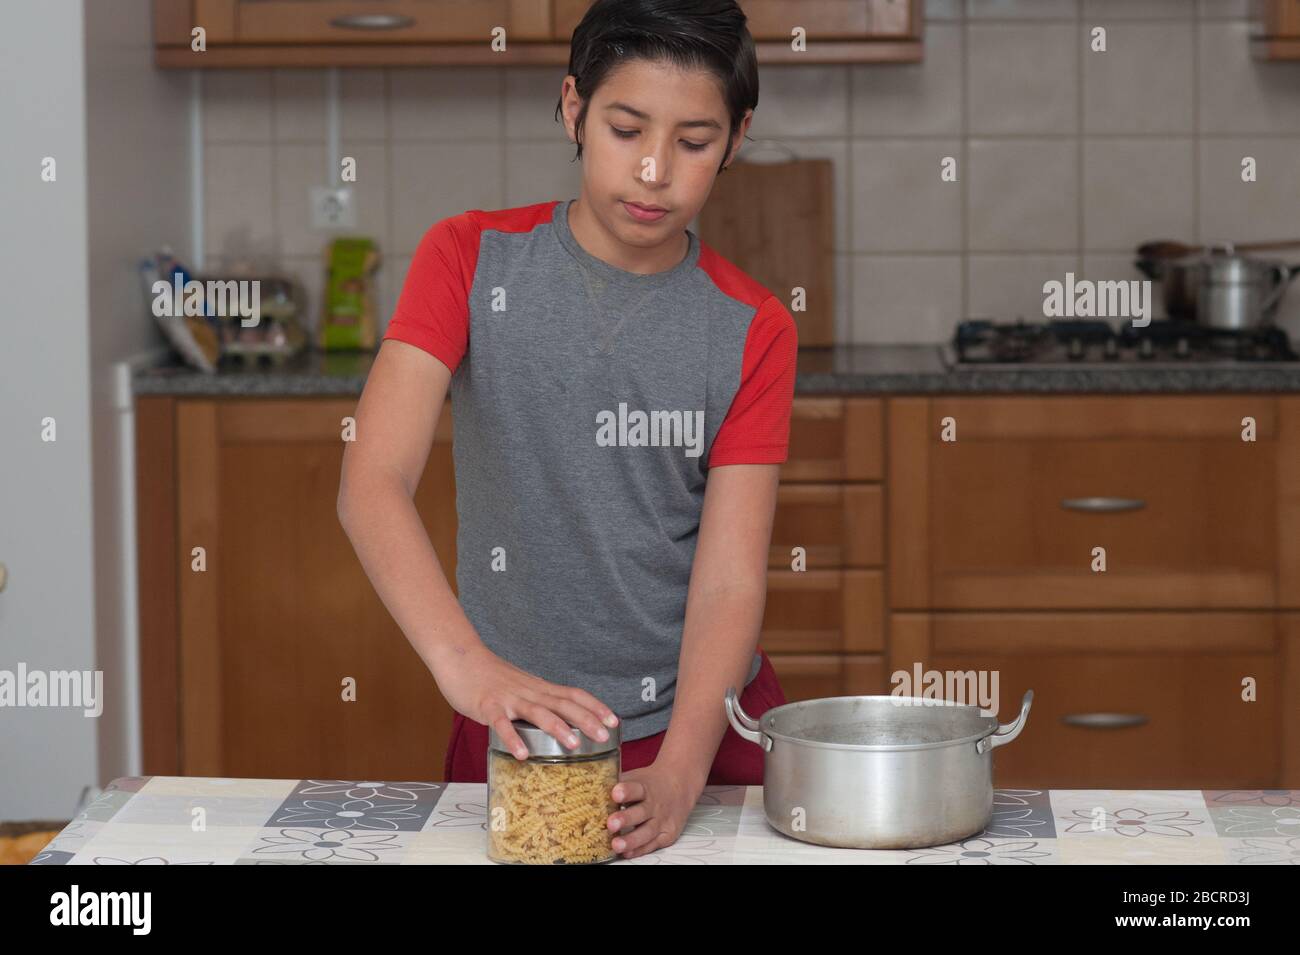 Junge, die eine Flasche Pasta in der Küche öffnet. Bild mit einem schönen Kopierraum. Stockfoto